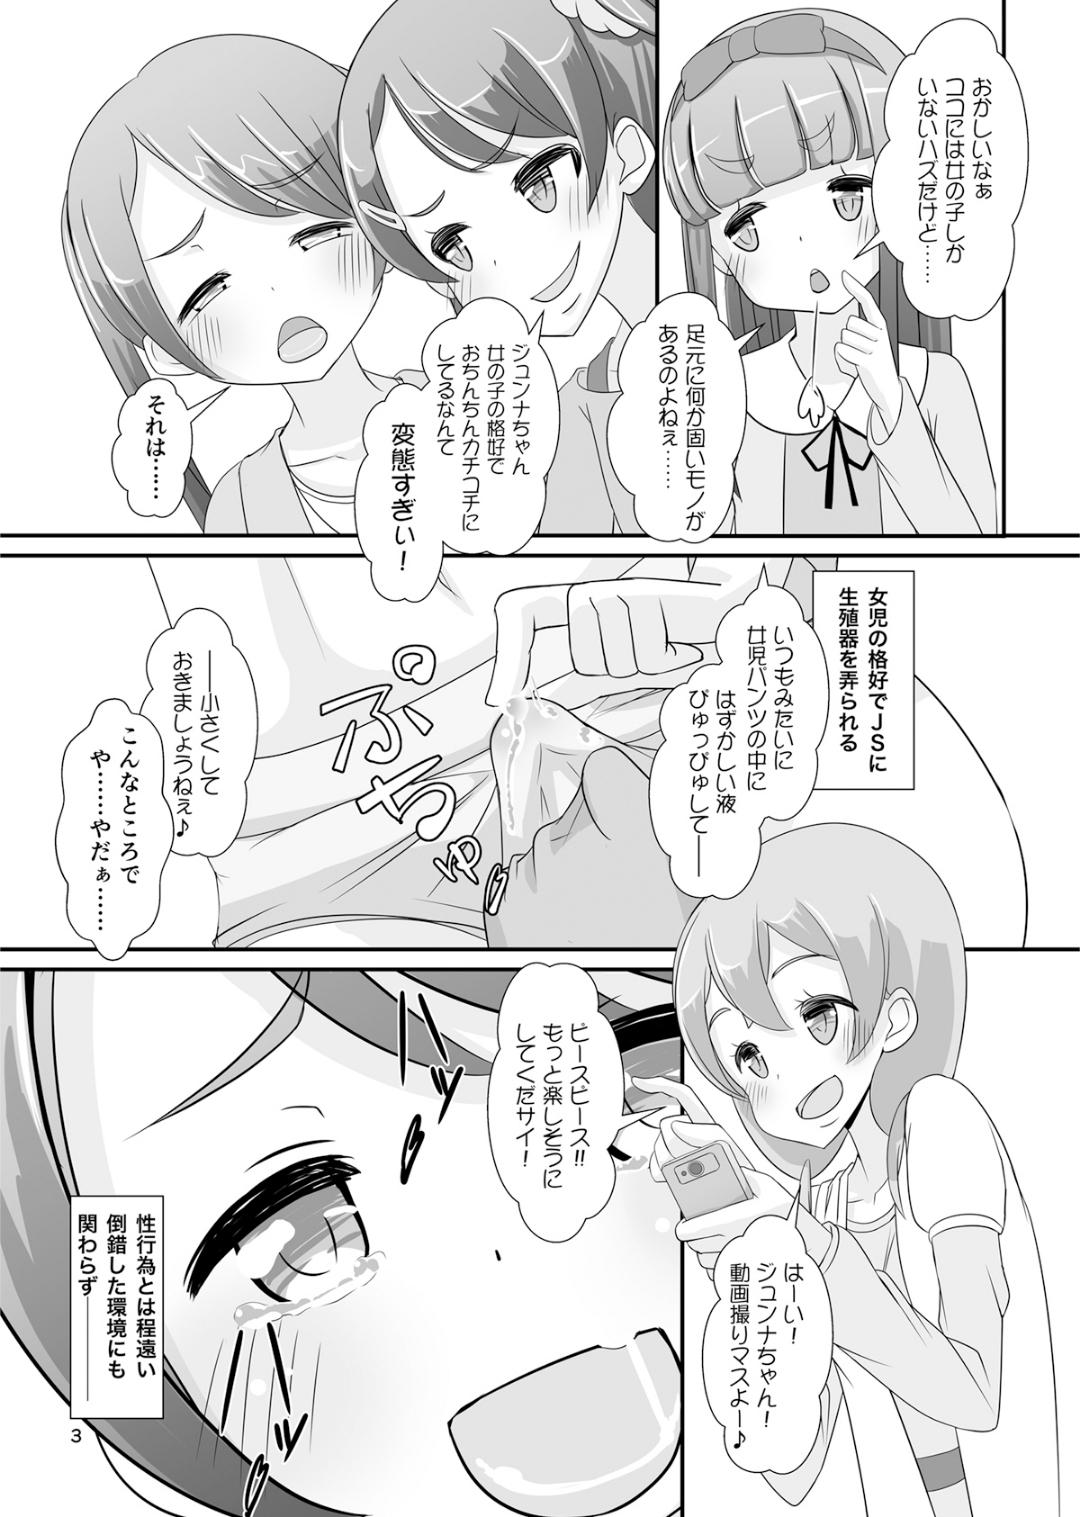 Jockstrap Sensei! Girls fes de Jojisou sitemite! Alt - Page 4